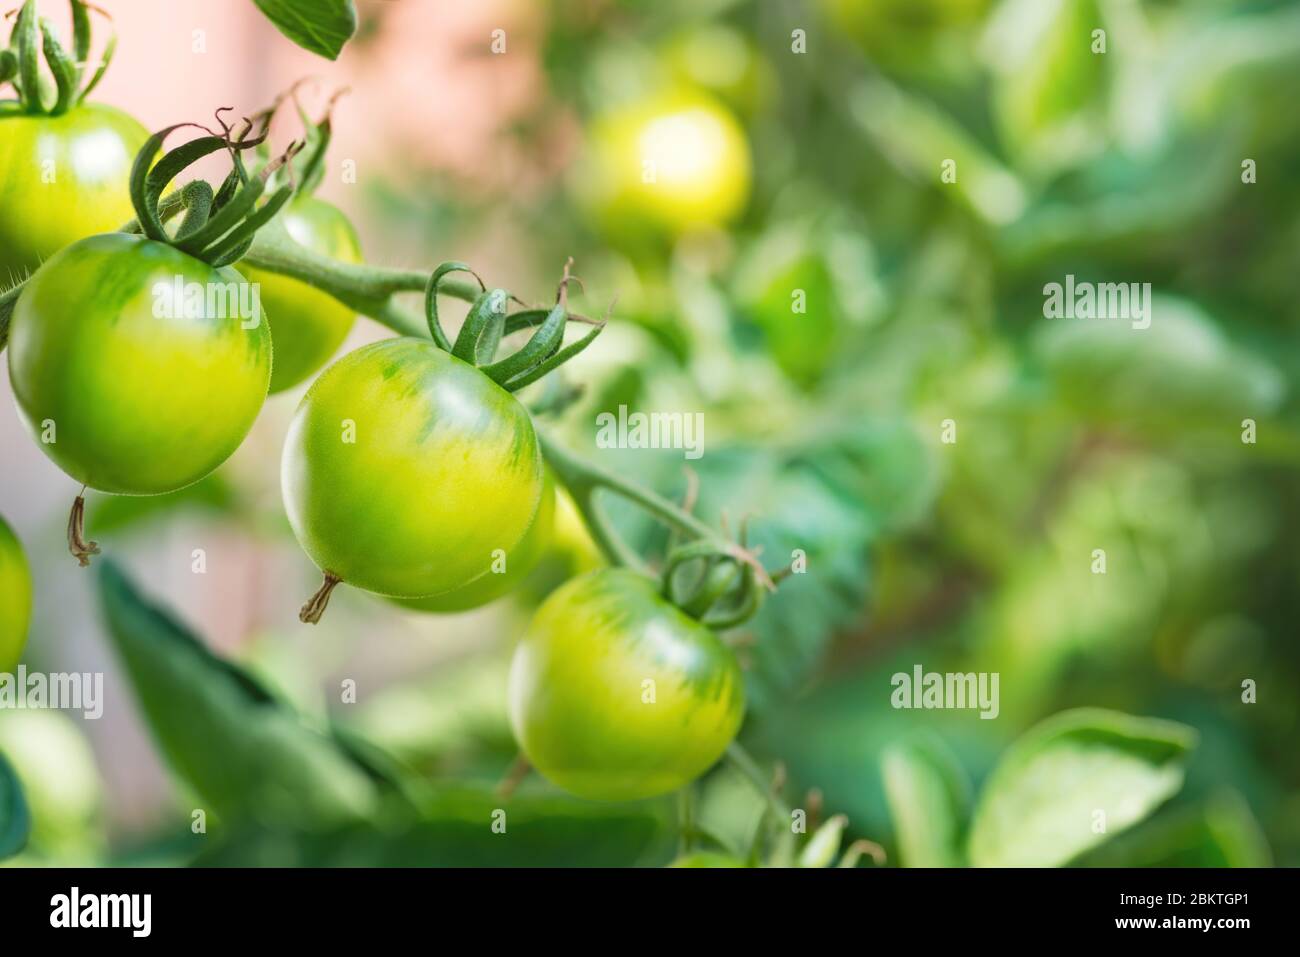 Bouquet de tomates vertes non mûres fraîches, cultivées sur une branche en serre maison. Arrière-plan flou et espace de copie pour votre publicité me texte Banque D'Images